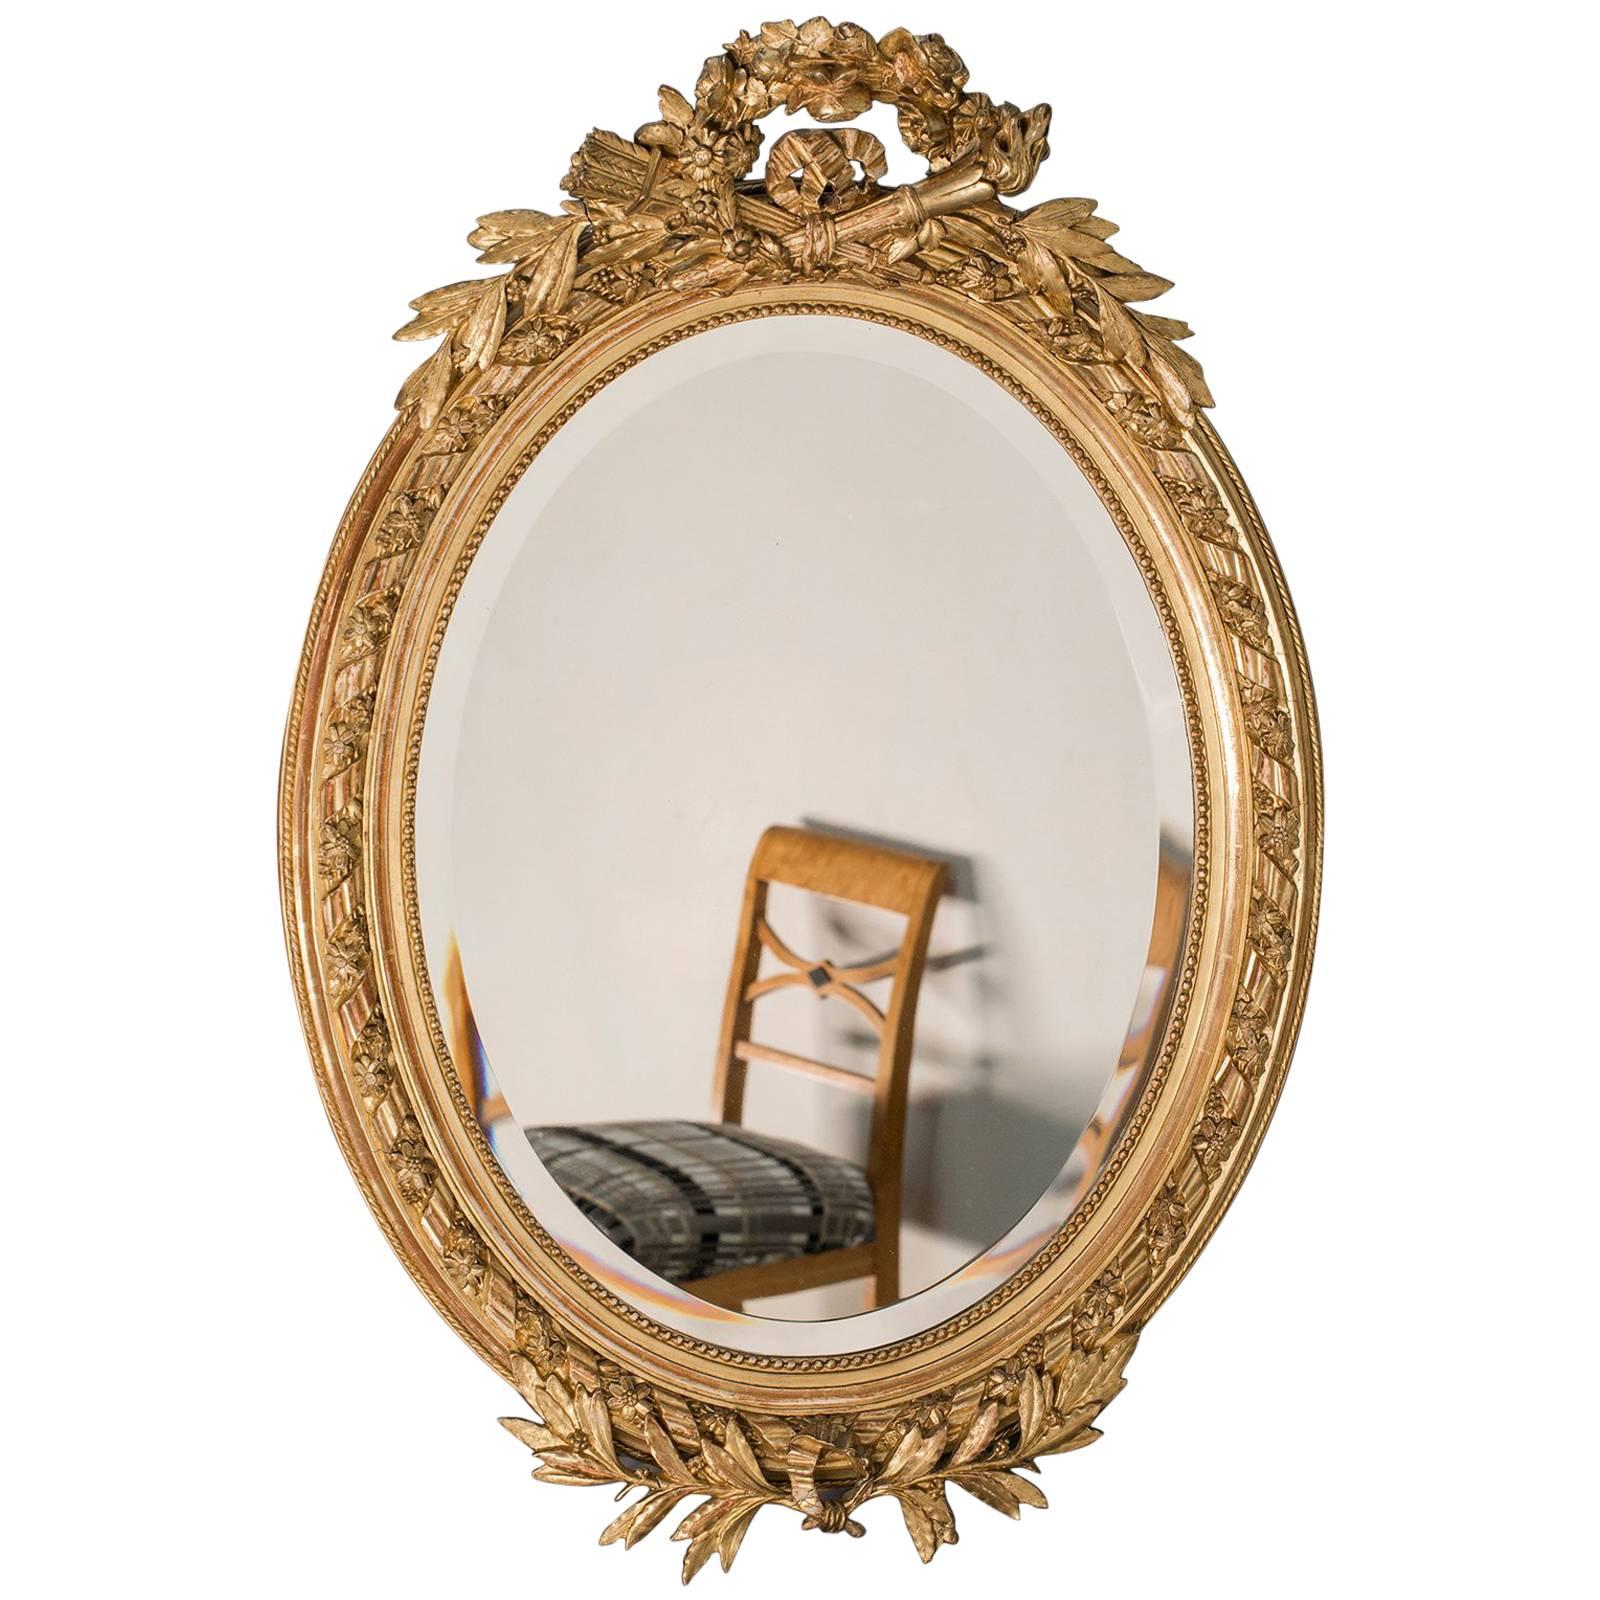 Antique French, Louis XVI Style Oval Mirror, circa 1890